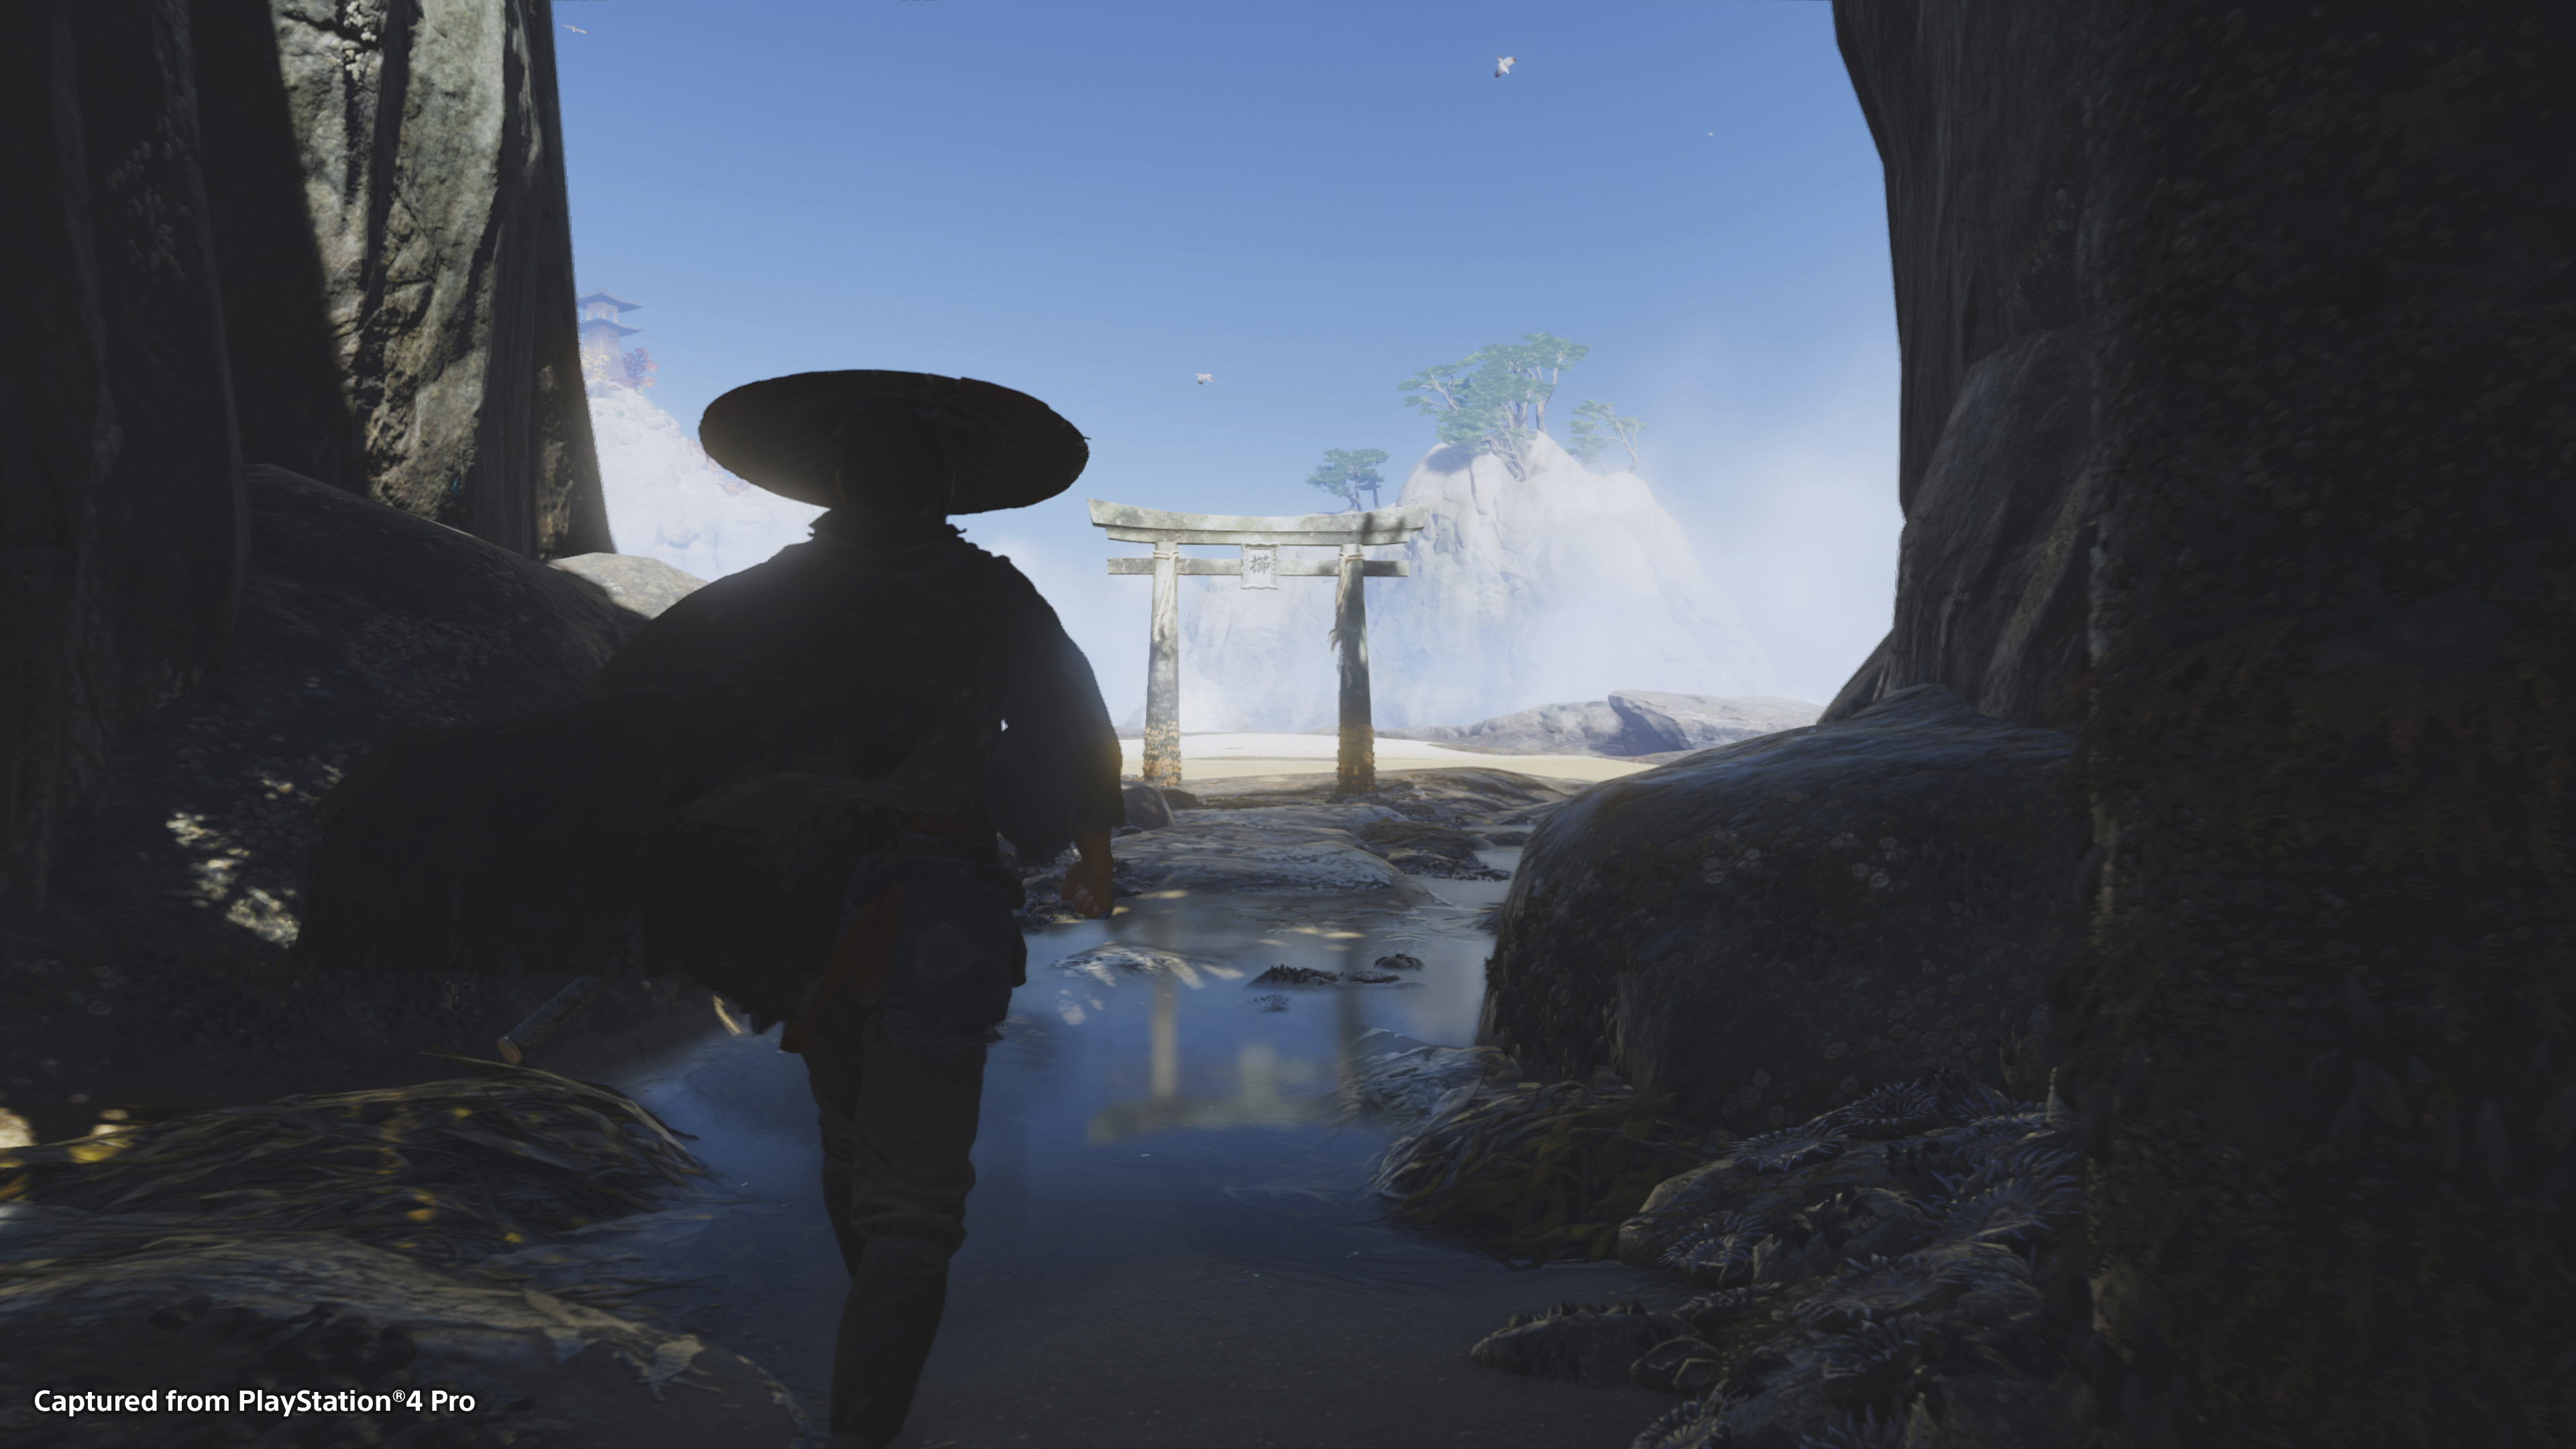 Captura de pantalla del juego Ghost of Tsushima con la silueta del personaje principal Jin Sakai contra un cielo azul brillante.